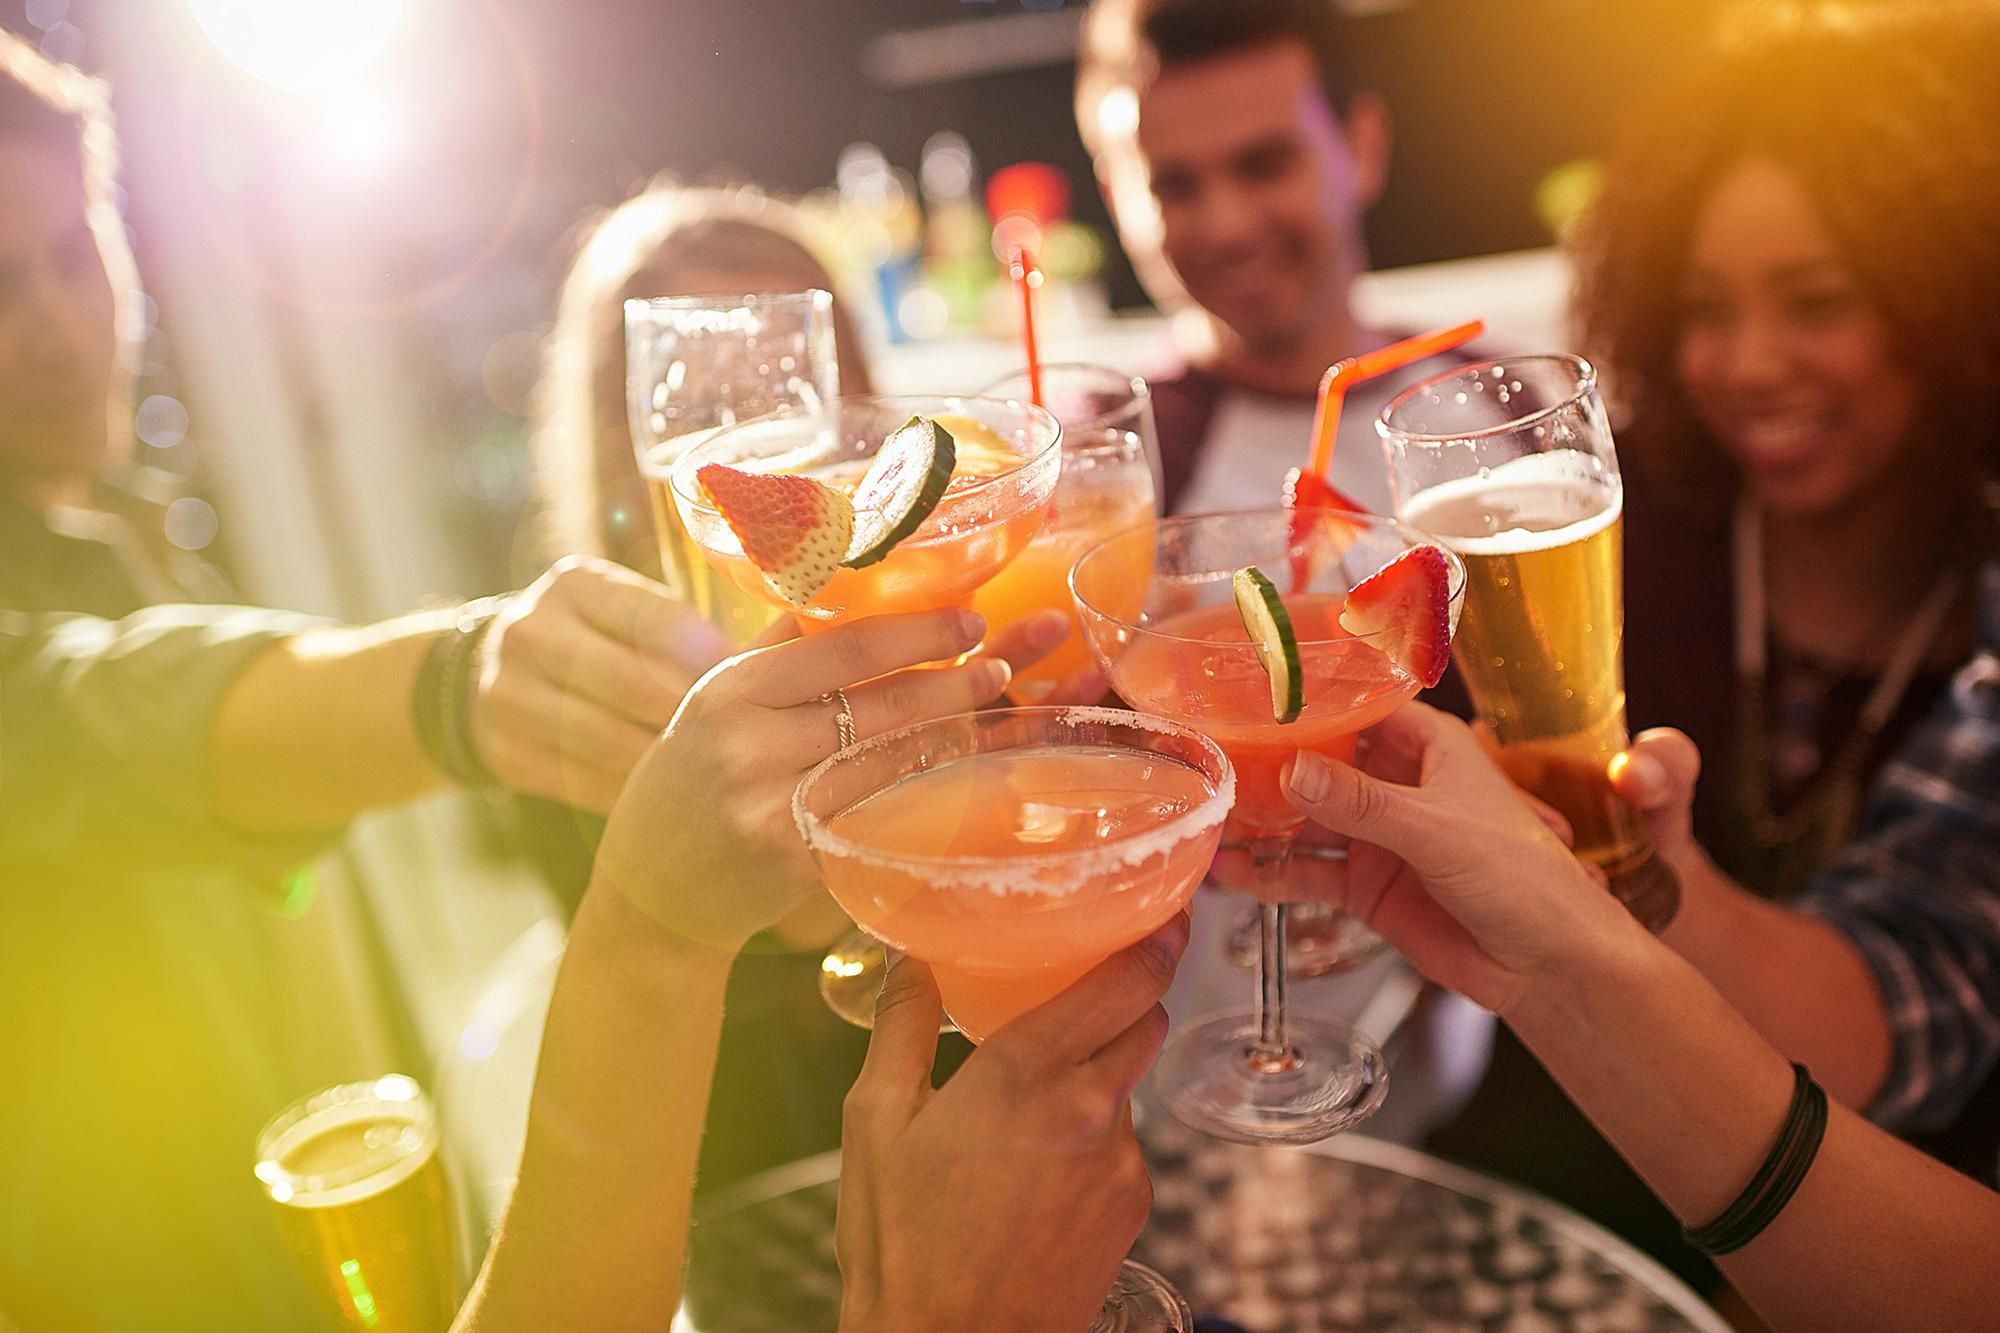 10 ознак, які вказують на проблеми людини з алкоголем